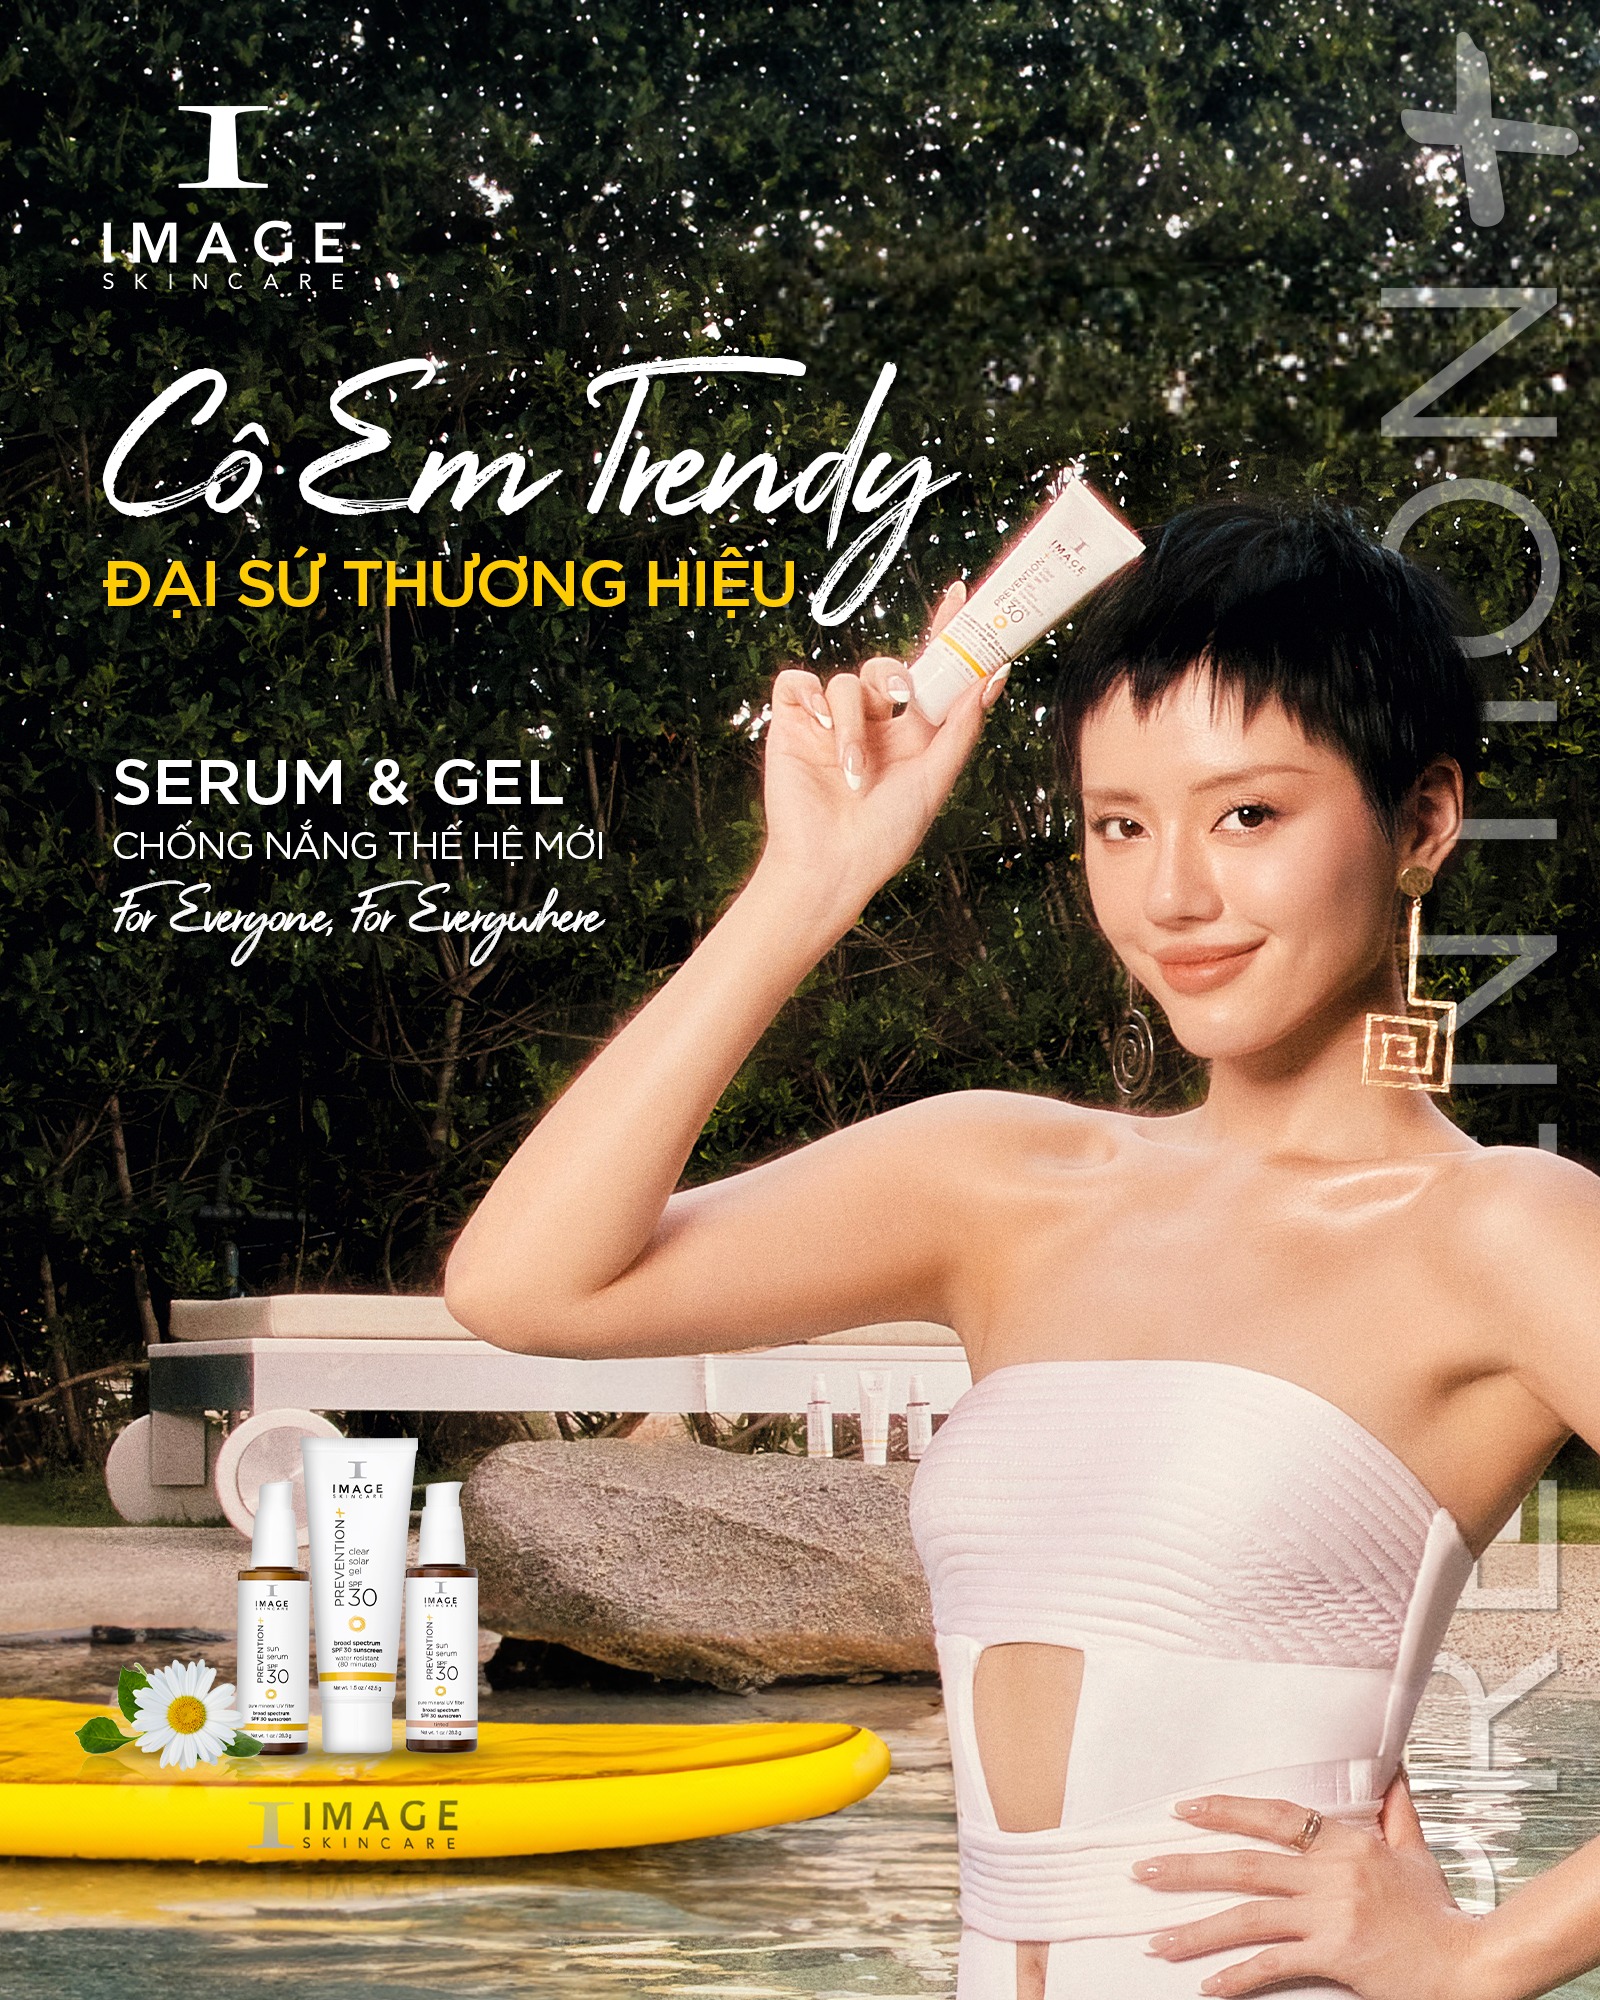 Fashionista Cô Em Trendy (Khánh Linh) - Đại sứ thương hiệu cho dòng PREVENTION+ 